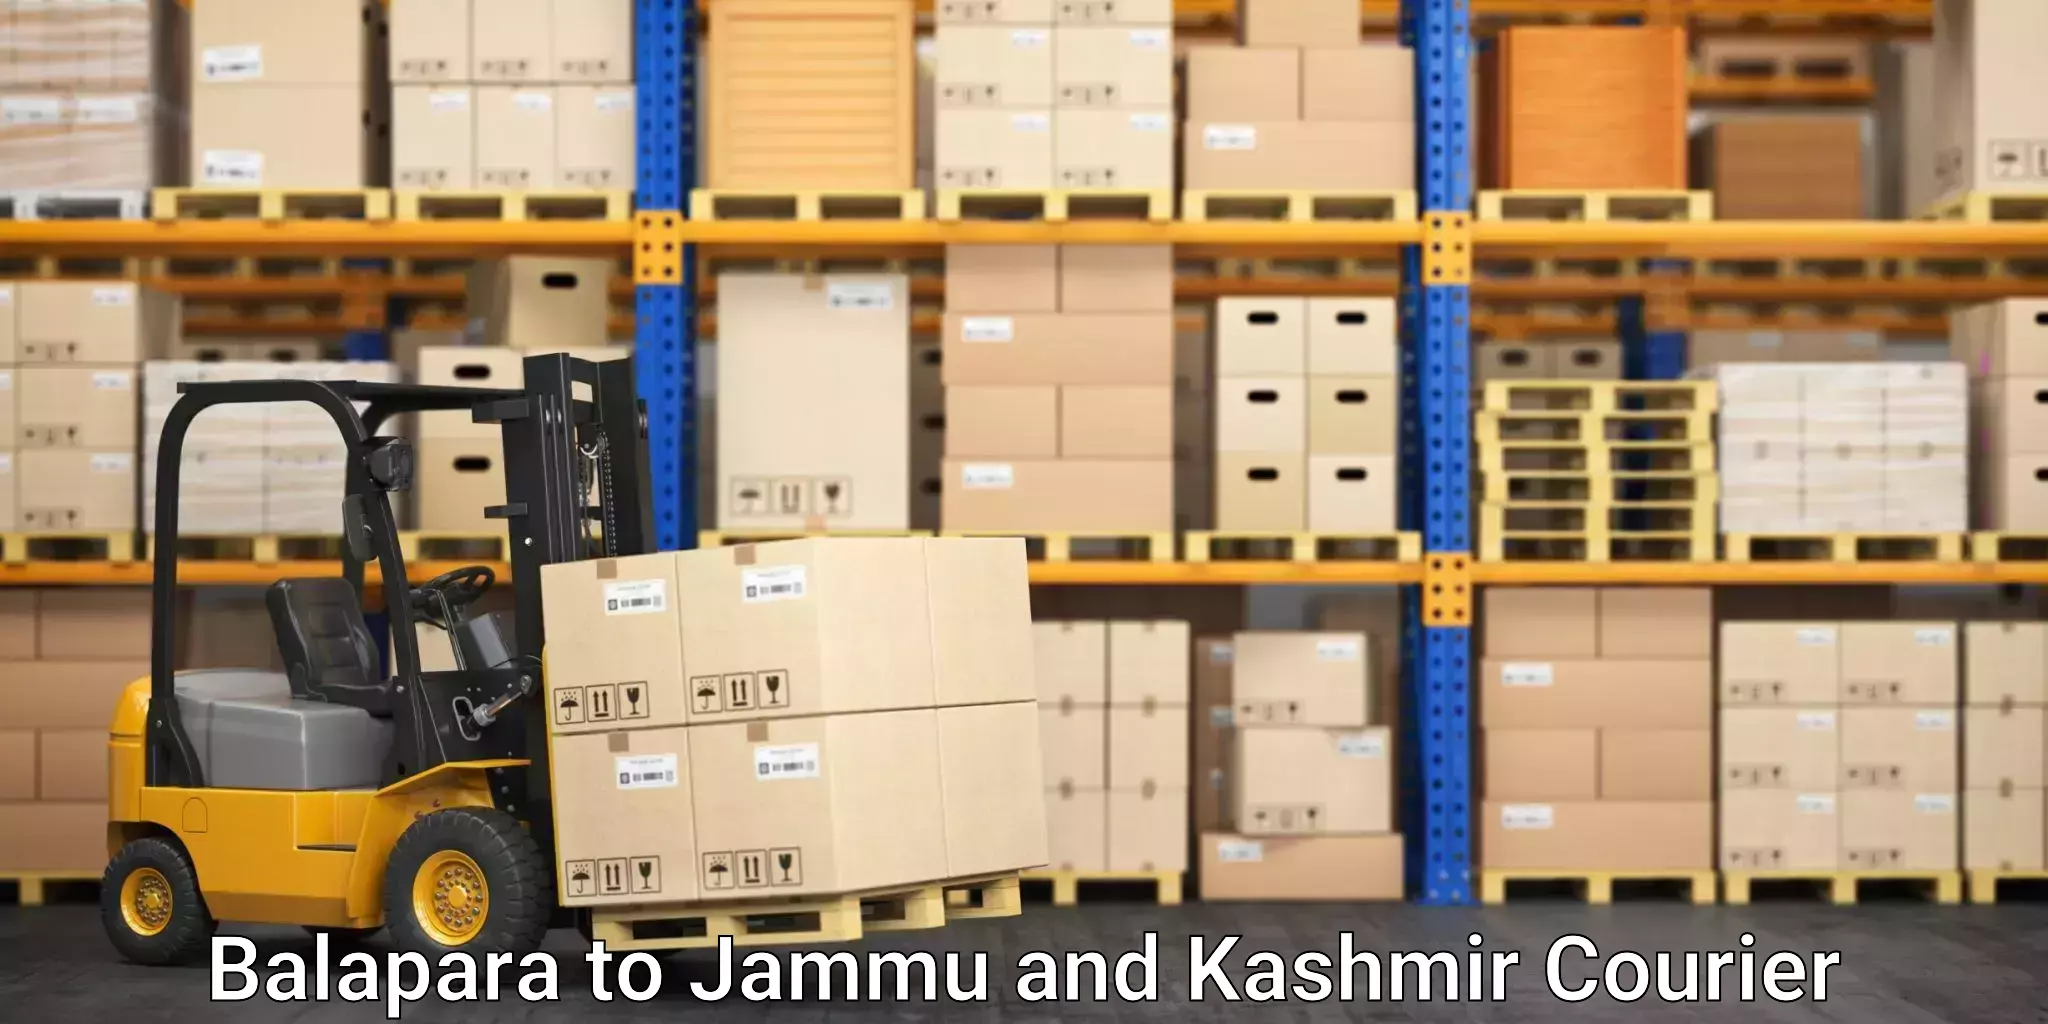 Next-day freight services Balapara to Jammu and Kashmir